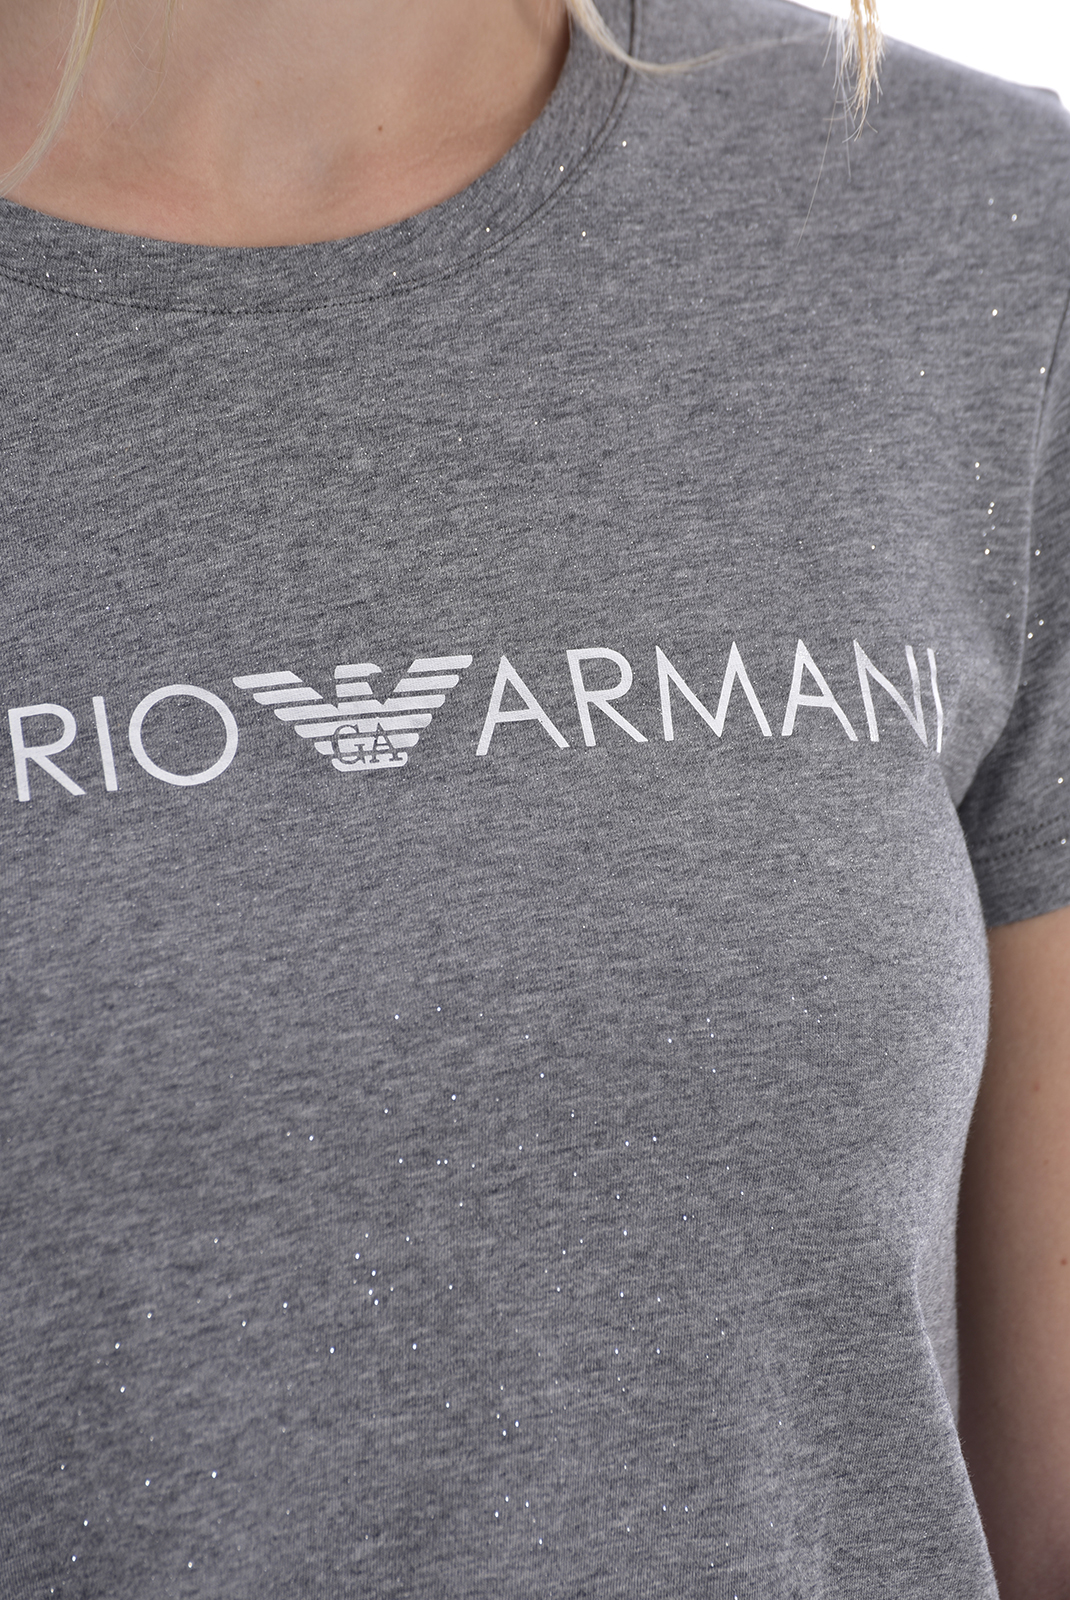 Emporio Armani Tee-shirt Stretch Gris 164272 0a225 